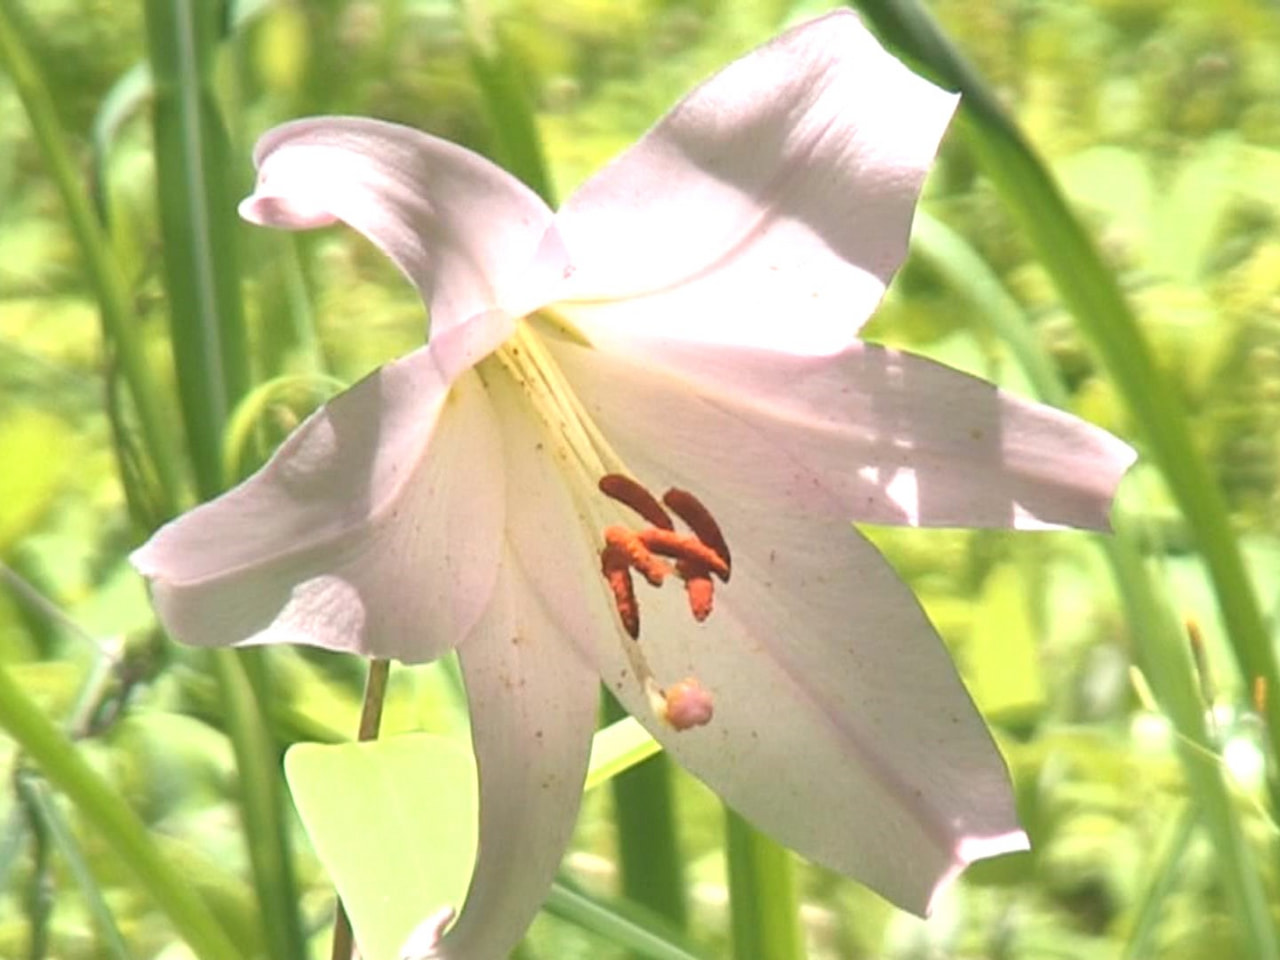 高山市国府町の四十八滝山野草花園「花の森」でササユリが見頃を迎え、美しく可憐な花...